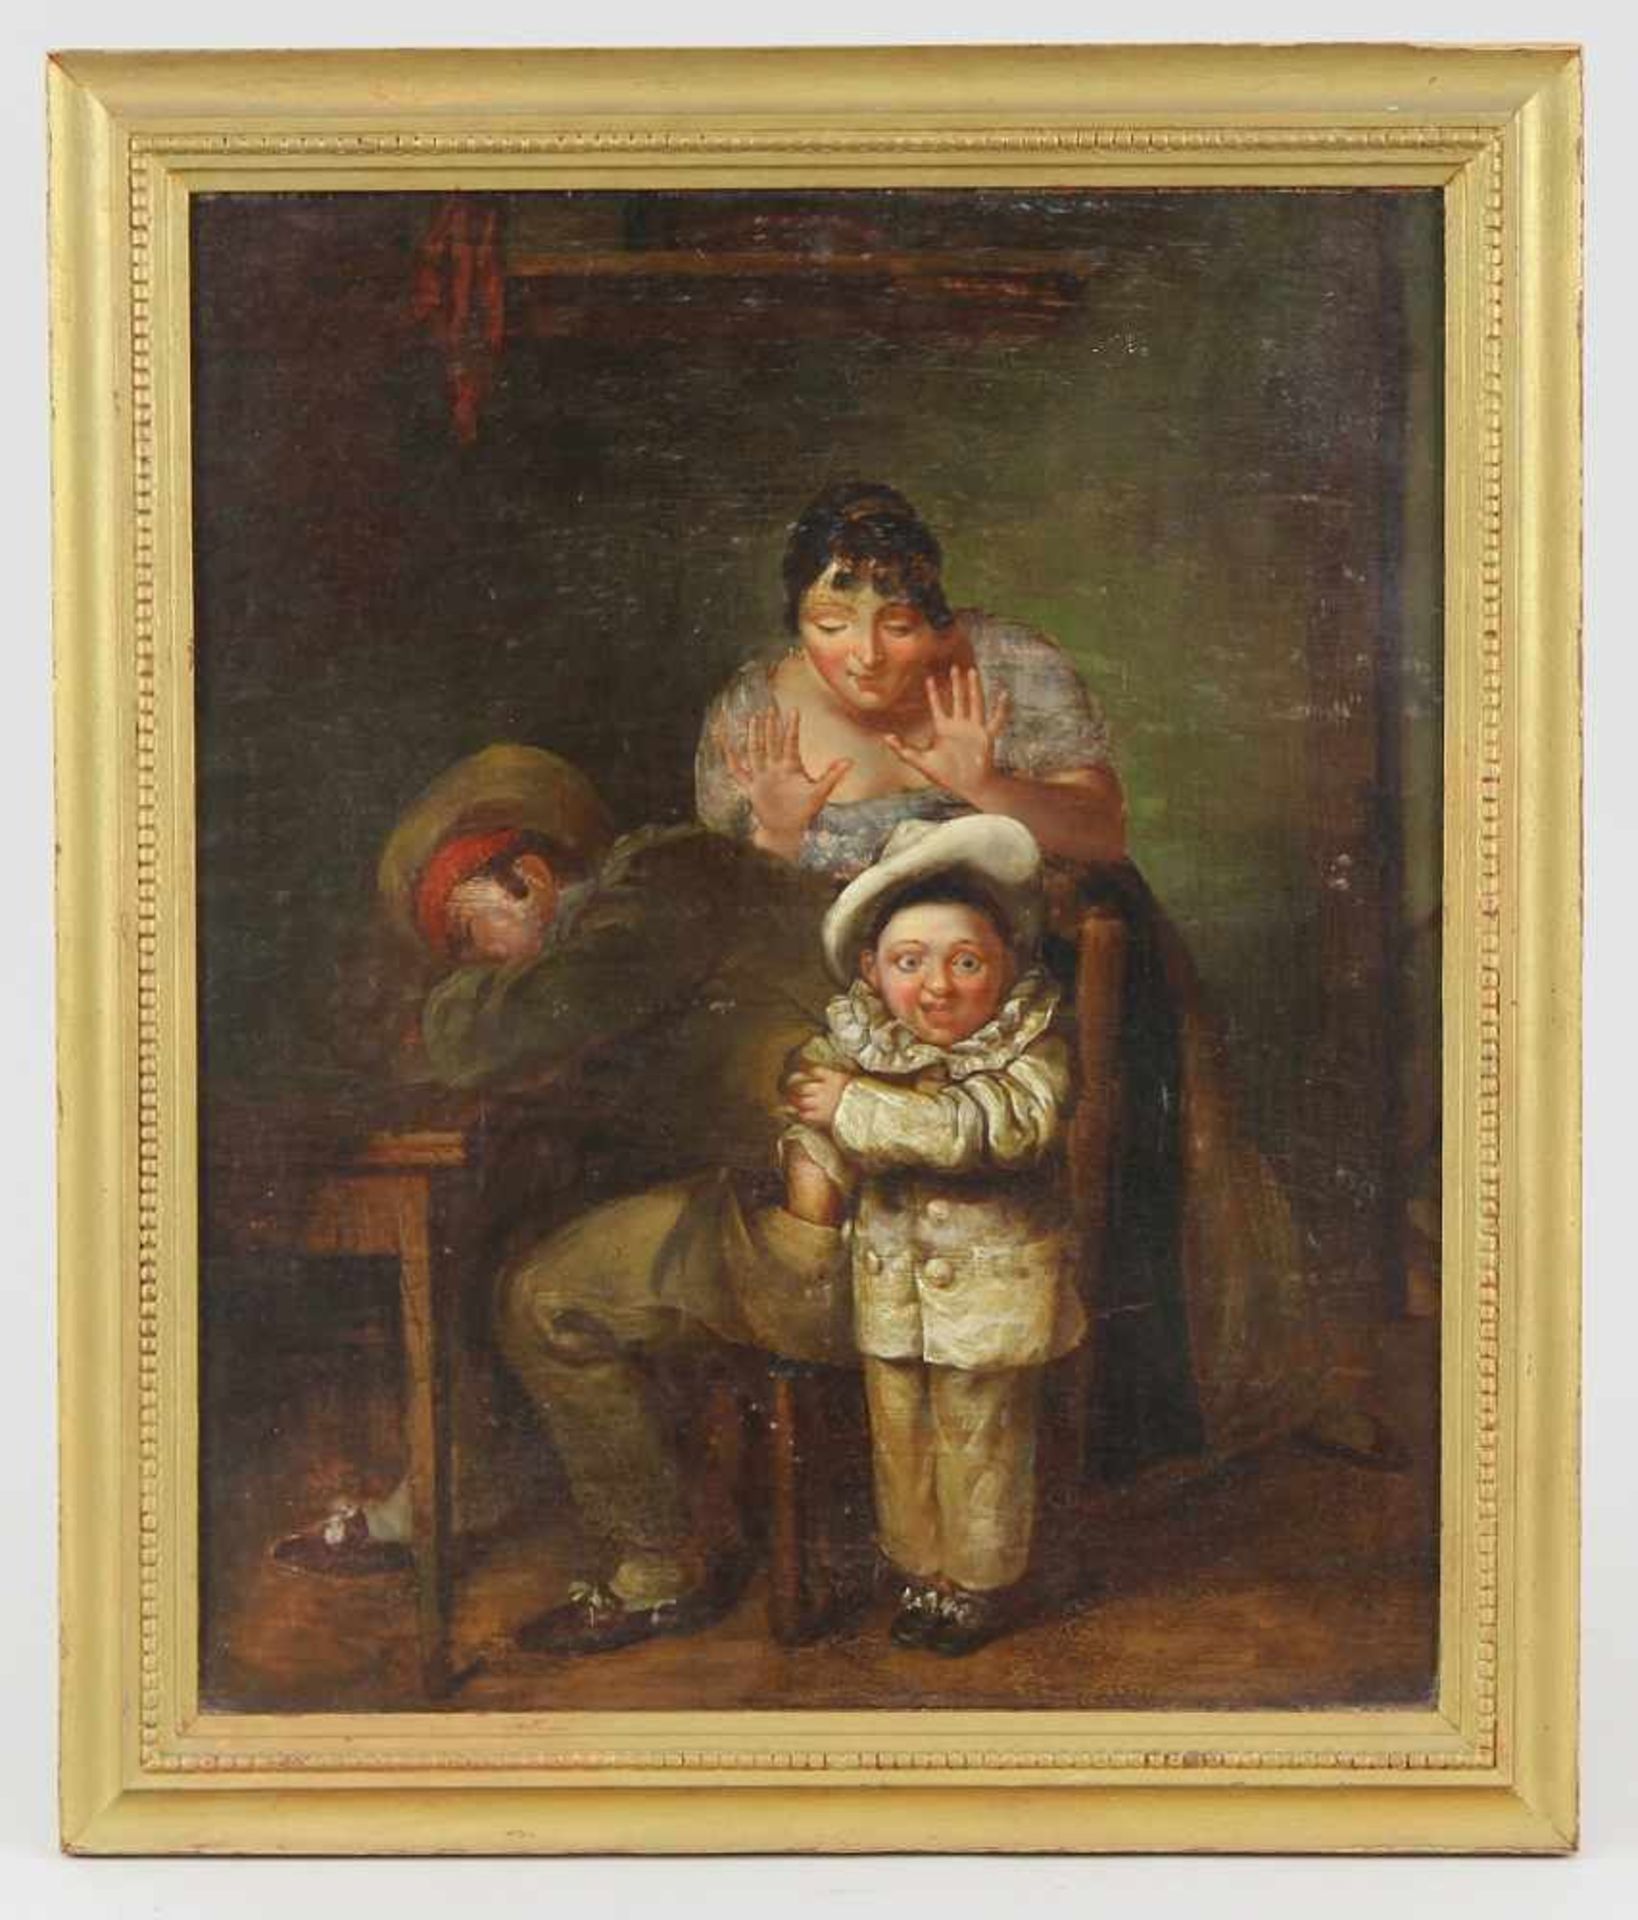 Englischer Maler des 19. Jhd. Gemälde "Auf frischer Tat ertappt", Öl auf Mahagoniplatte, Interieur